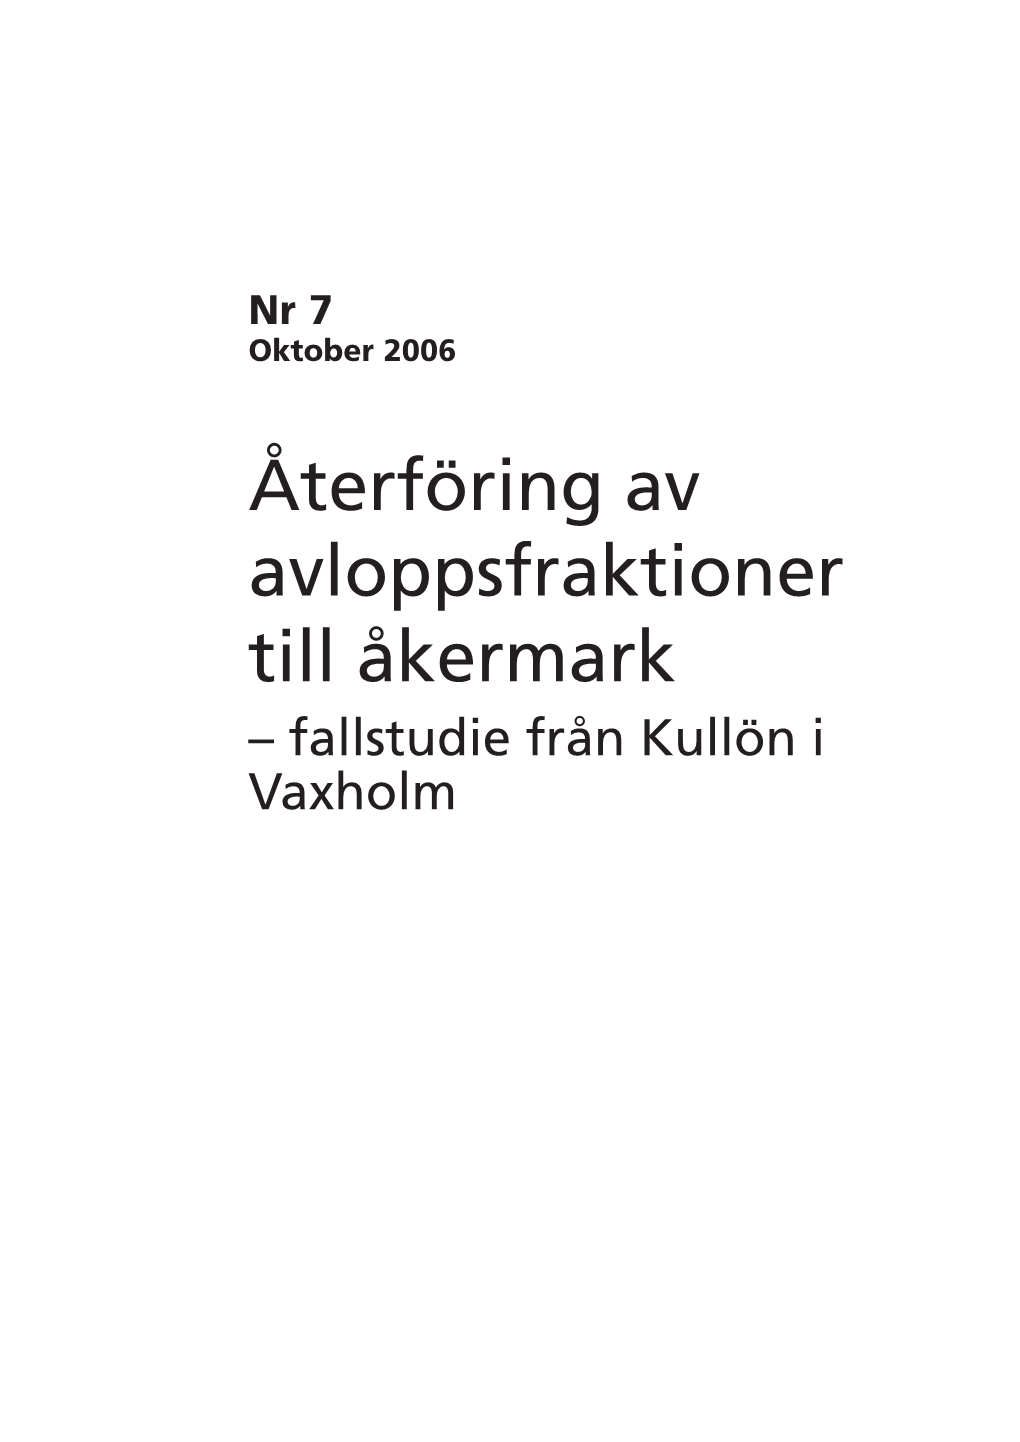 Återföring Av Avloppsfraktioner Till Åkermark – Fallstudie Från Kullön I Vaxholm PM 7:2006 Återföring Av Avloppsfraktioner Till Åkermark